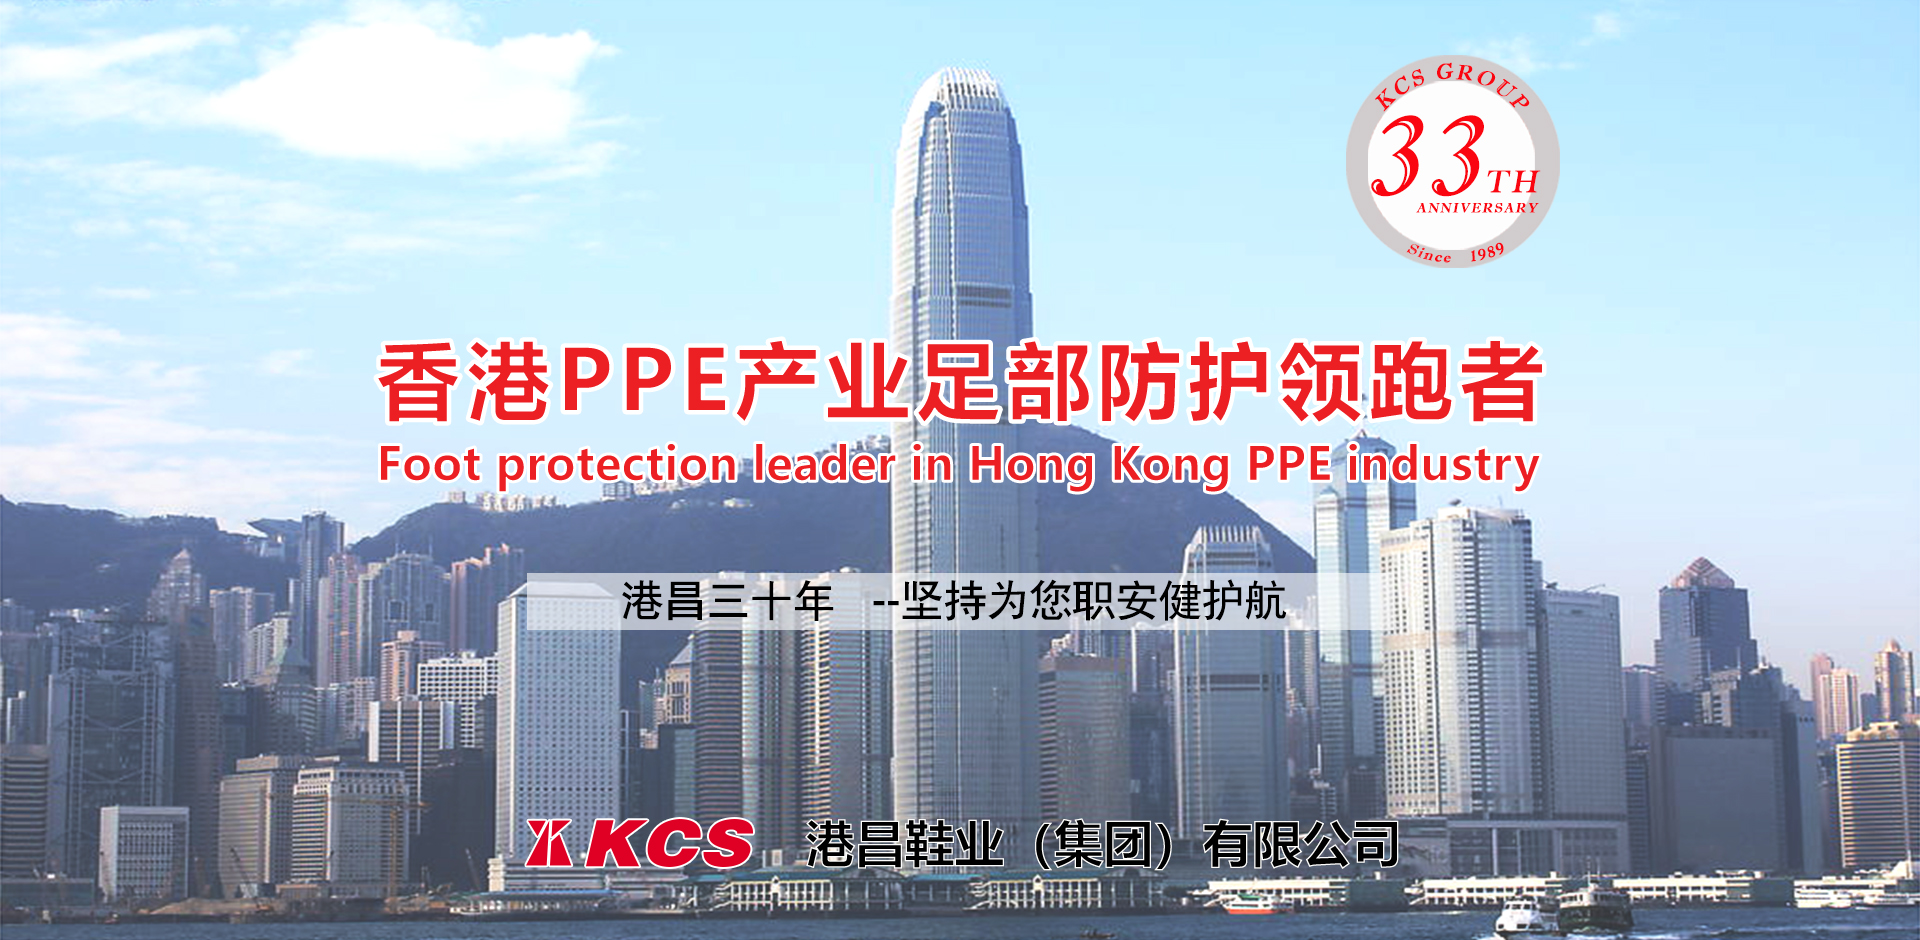 香港PPE产业足部防护领跑者